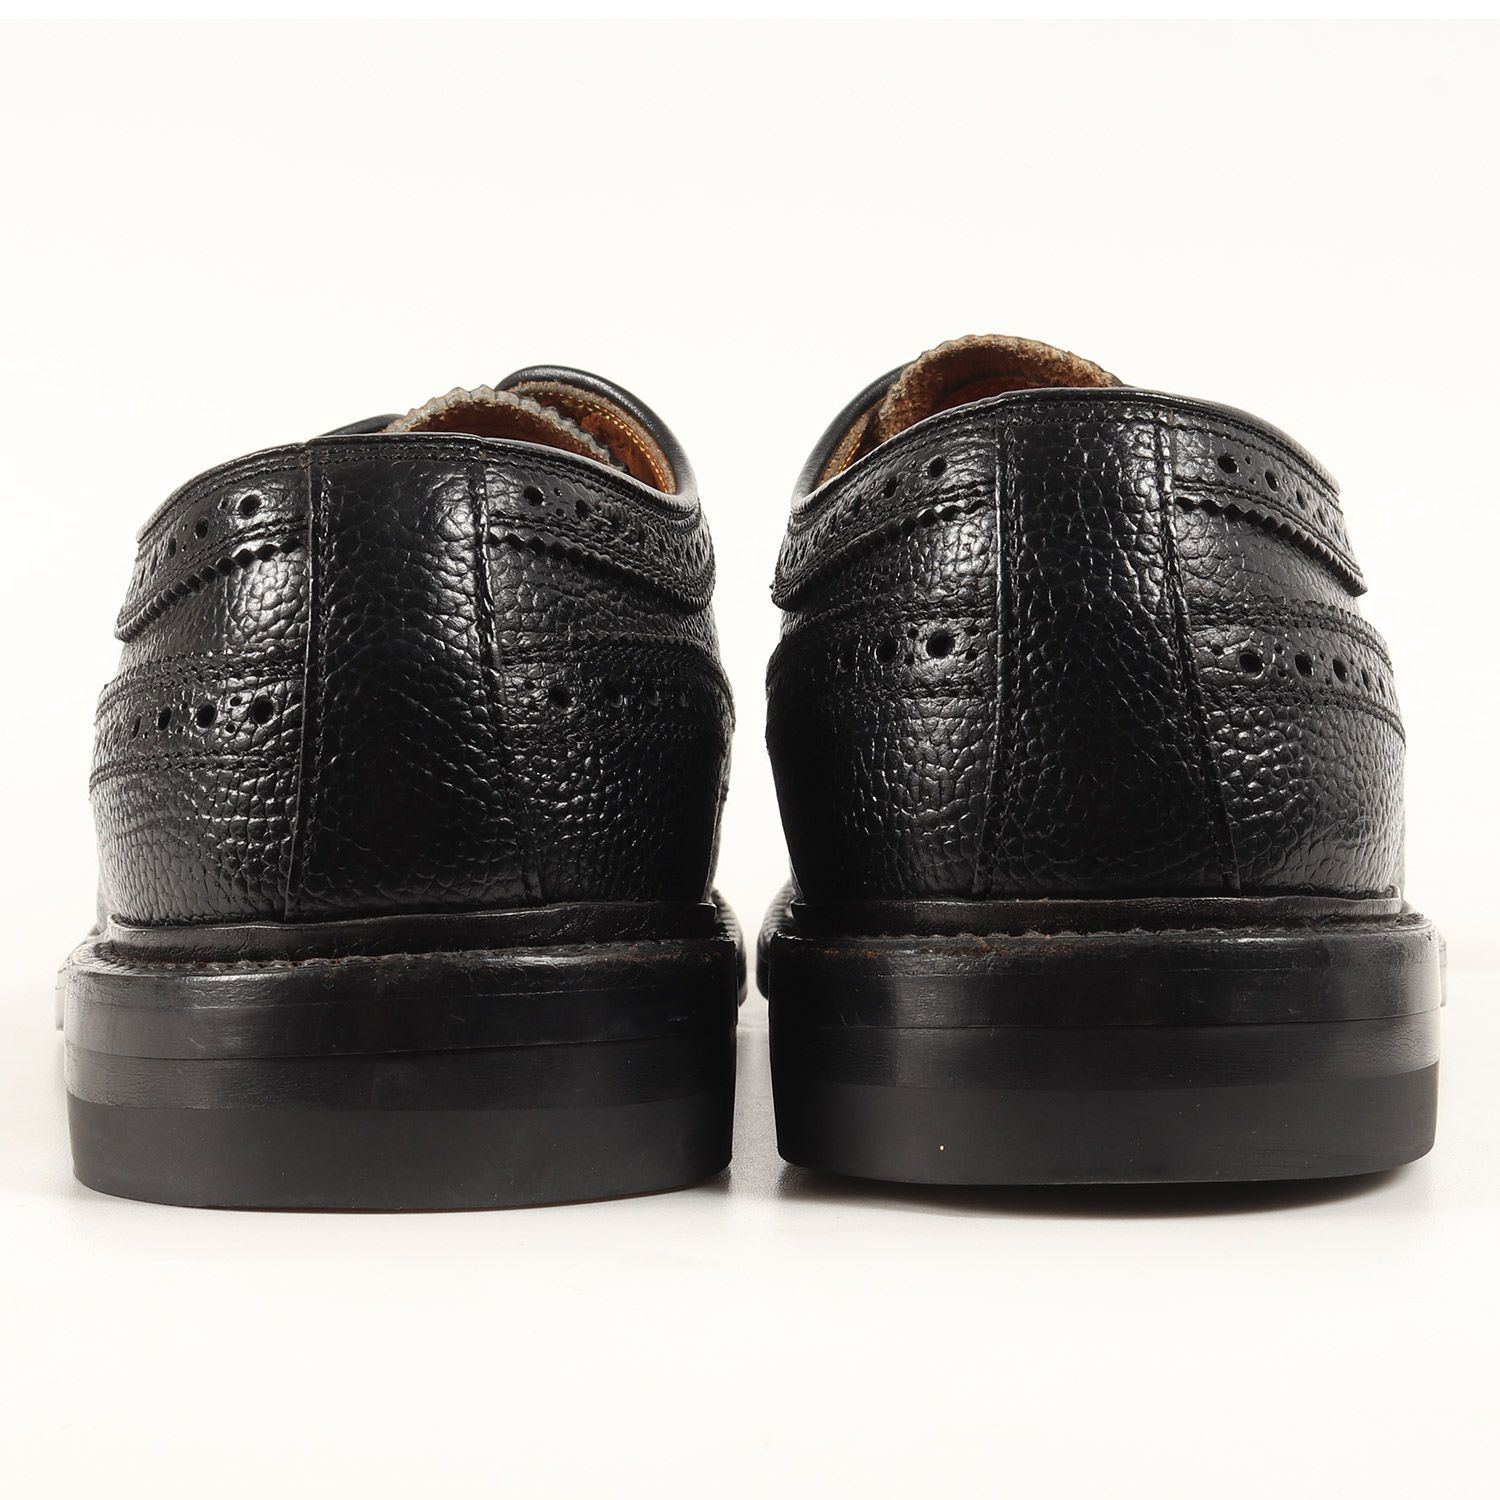 REGAL リーガル サイズ:24.5cm グレインレザー ウイングチップ 外羽根 シューズ ビジネスシューズ(676) ブラック 黒 革靴 ブランド 【メンズ】